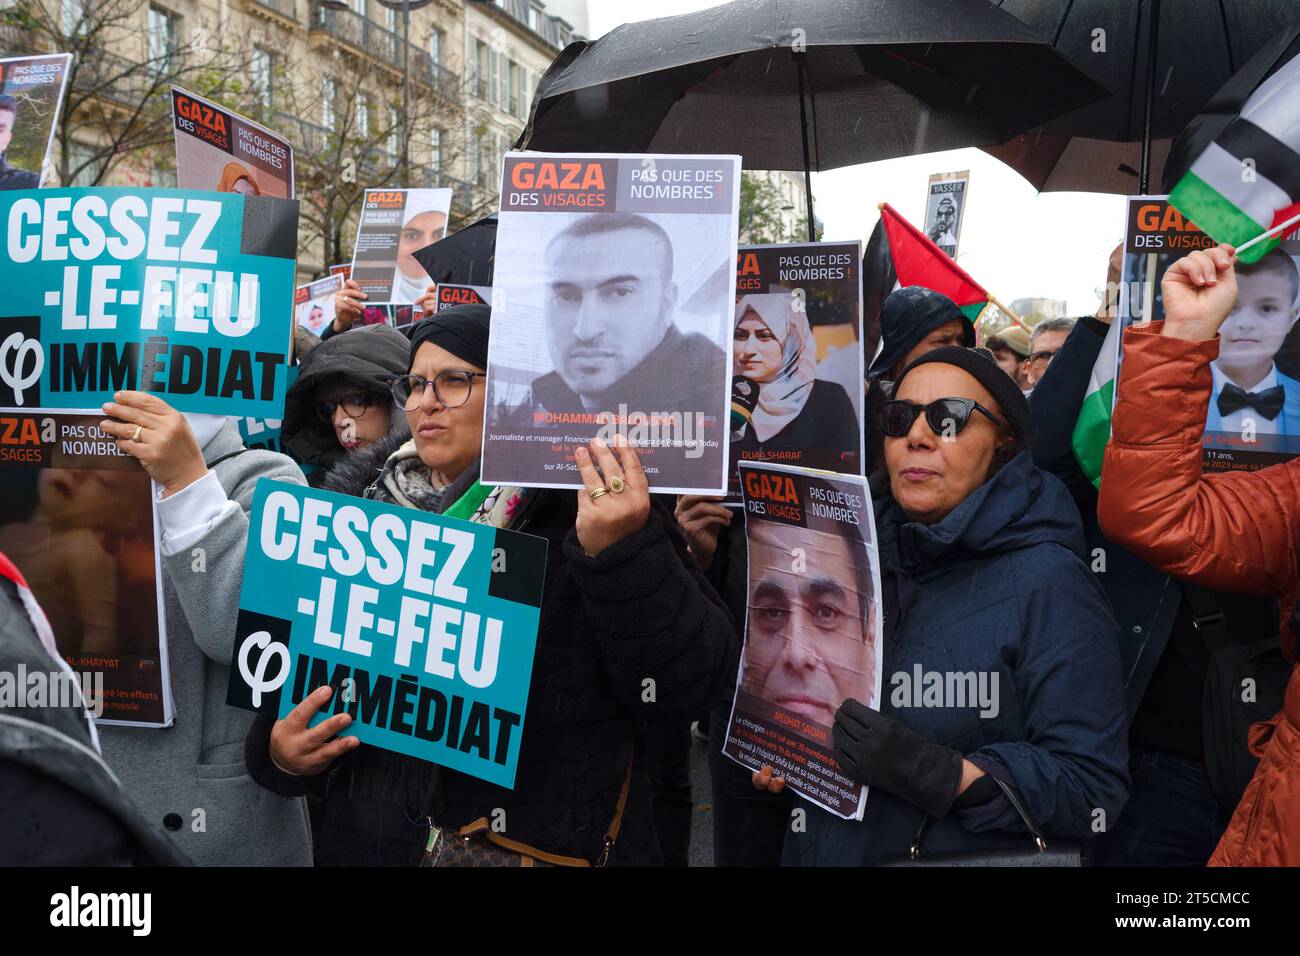 Plusieurs milliers de personnes (60000 selon l'organisateur) ont défilé dans Paris pour demander un cessez le feu immédiat à Gaza. Stock Photo